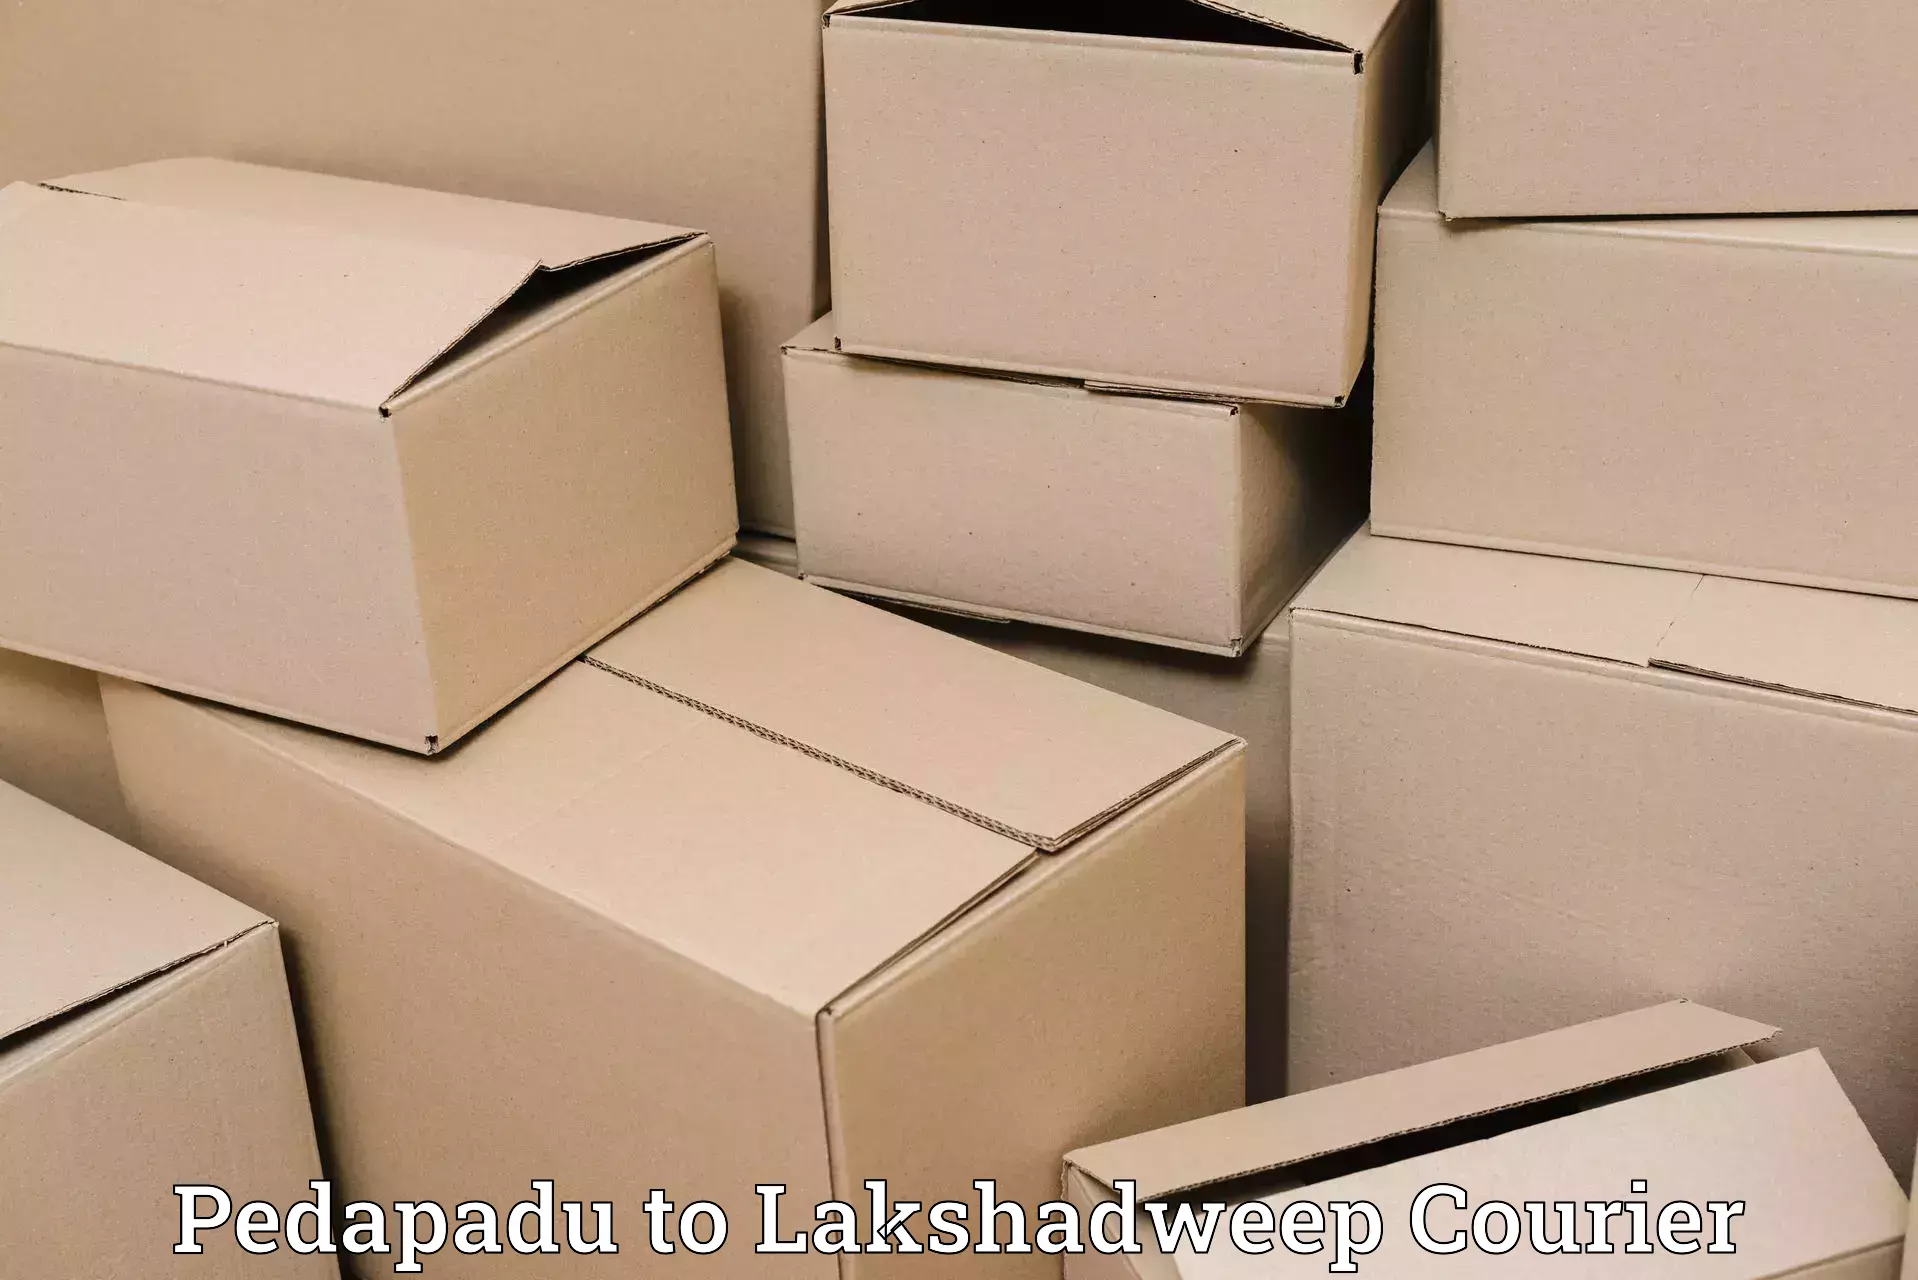 Efficient shipping platforms Pedapadu to Lakshadweep